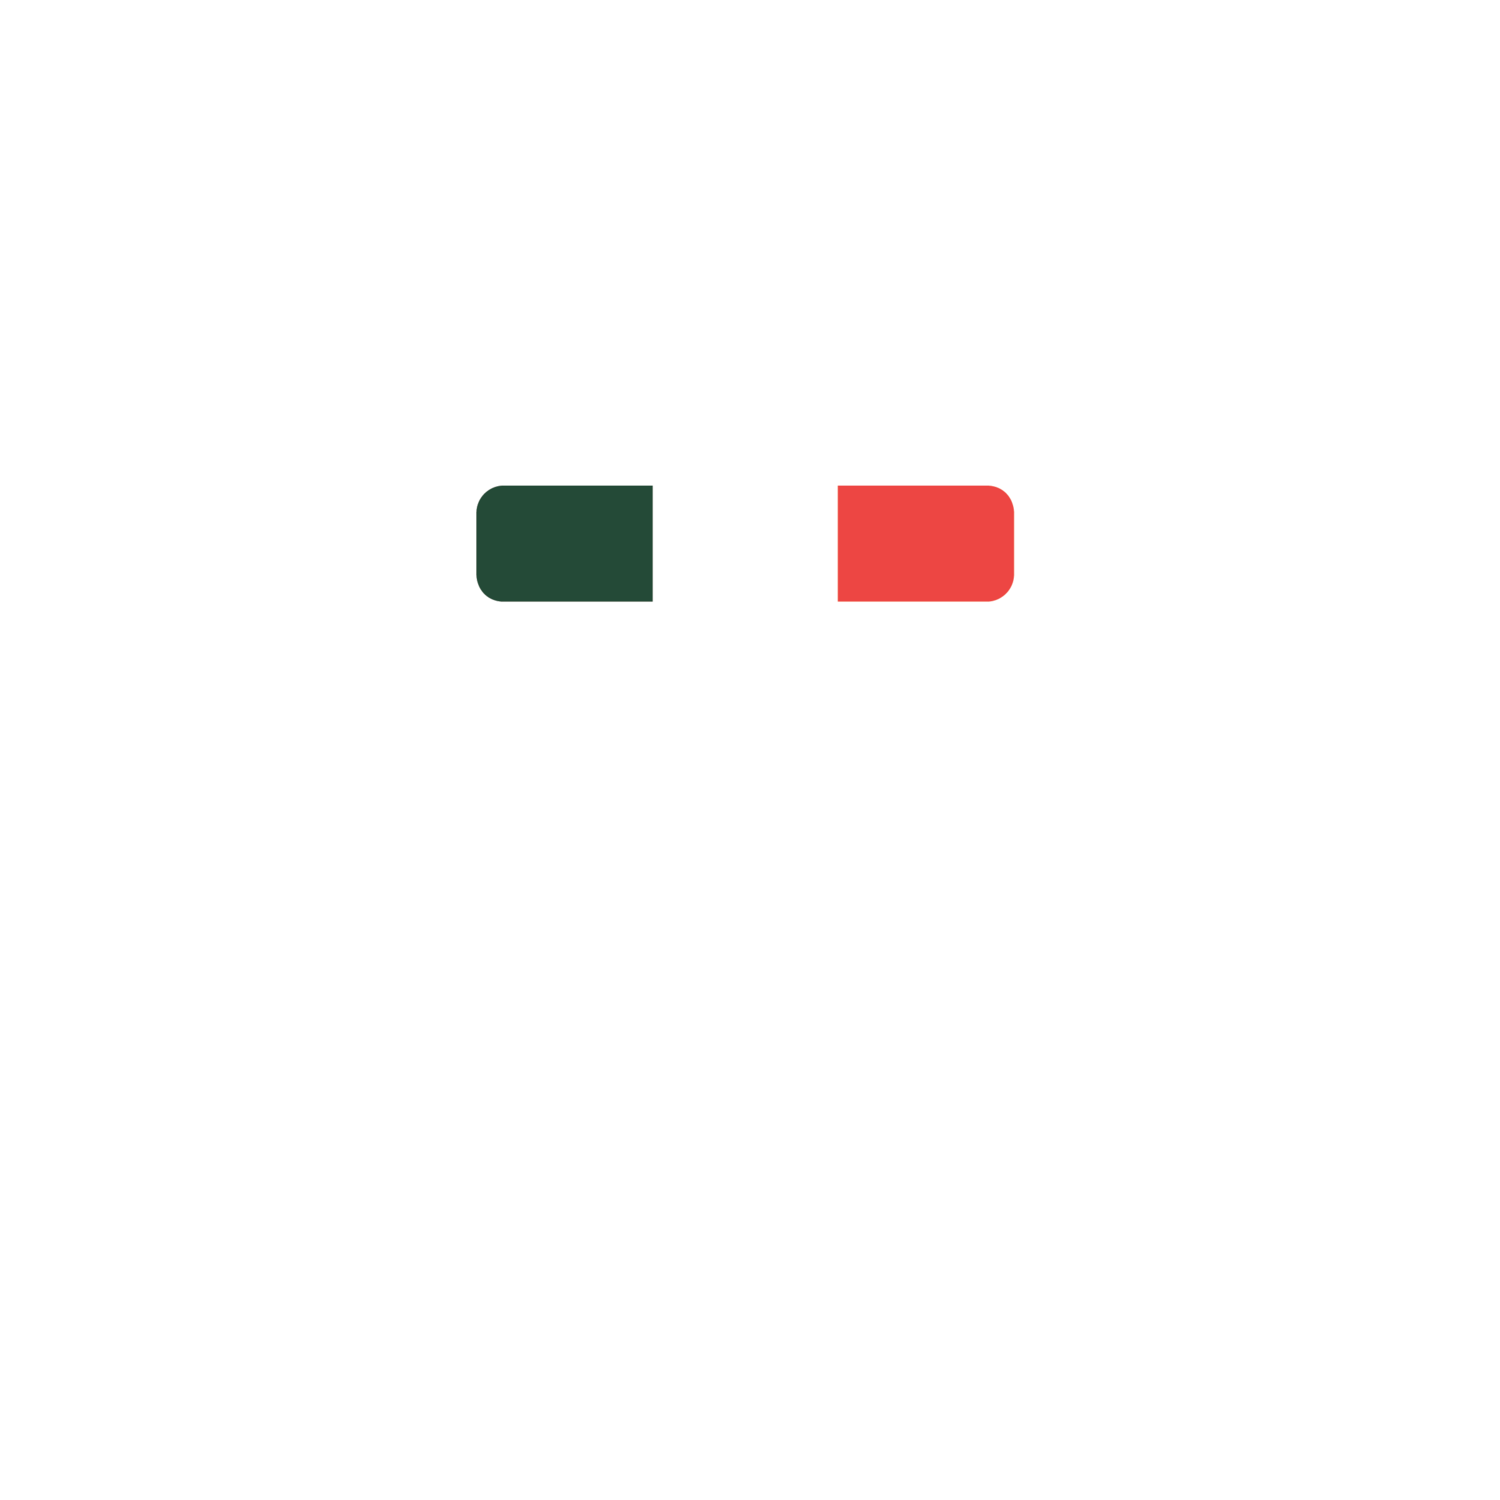 Toffino's